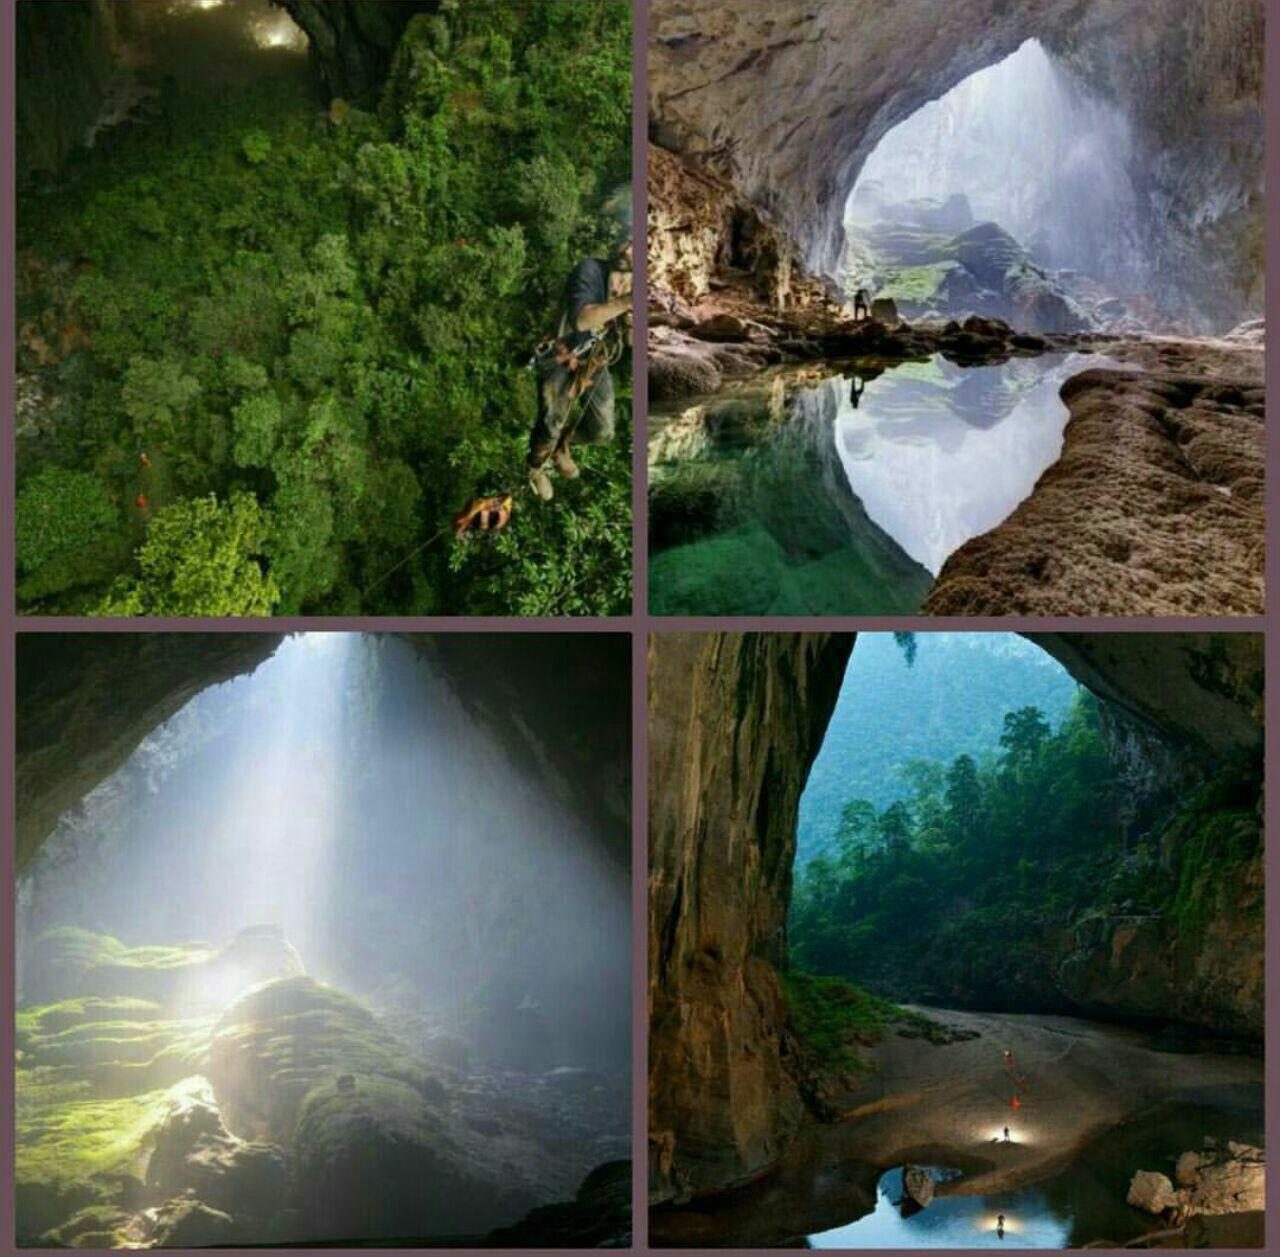 بزرگترین غار دنیا در ویتنام با یک جنگل در دل غار! (عکس)